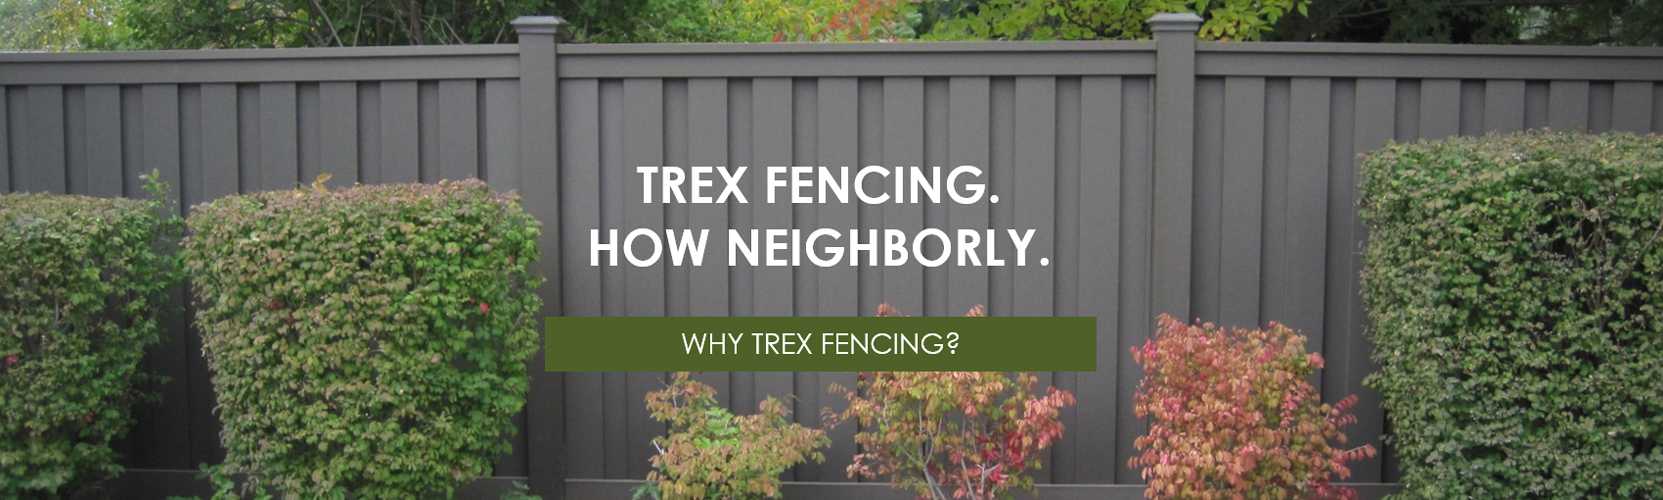 trex fencing